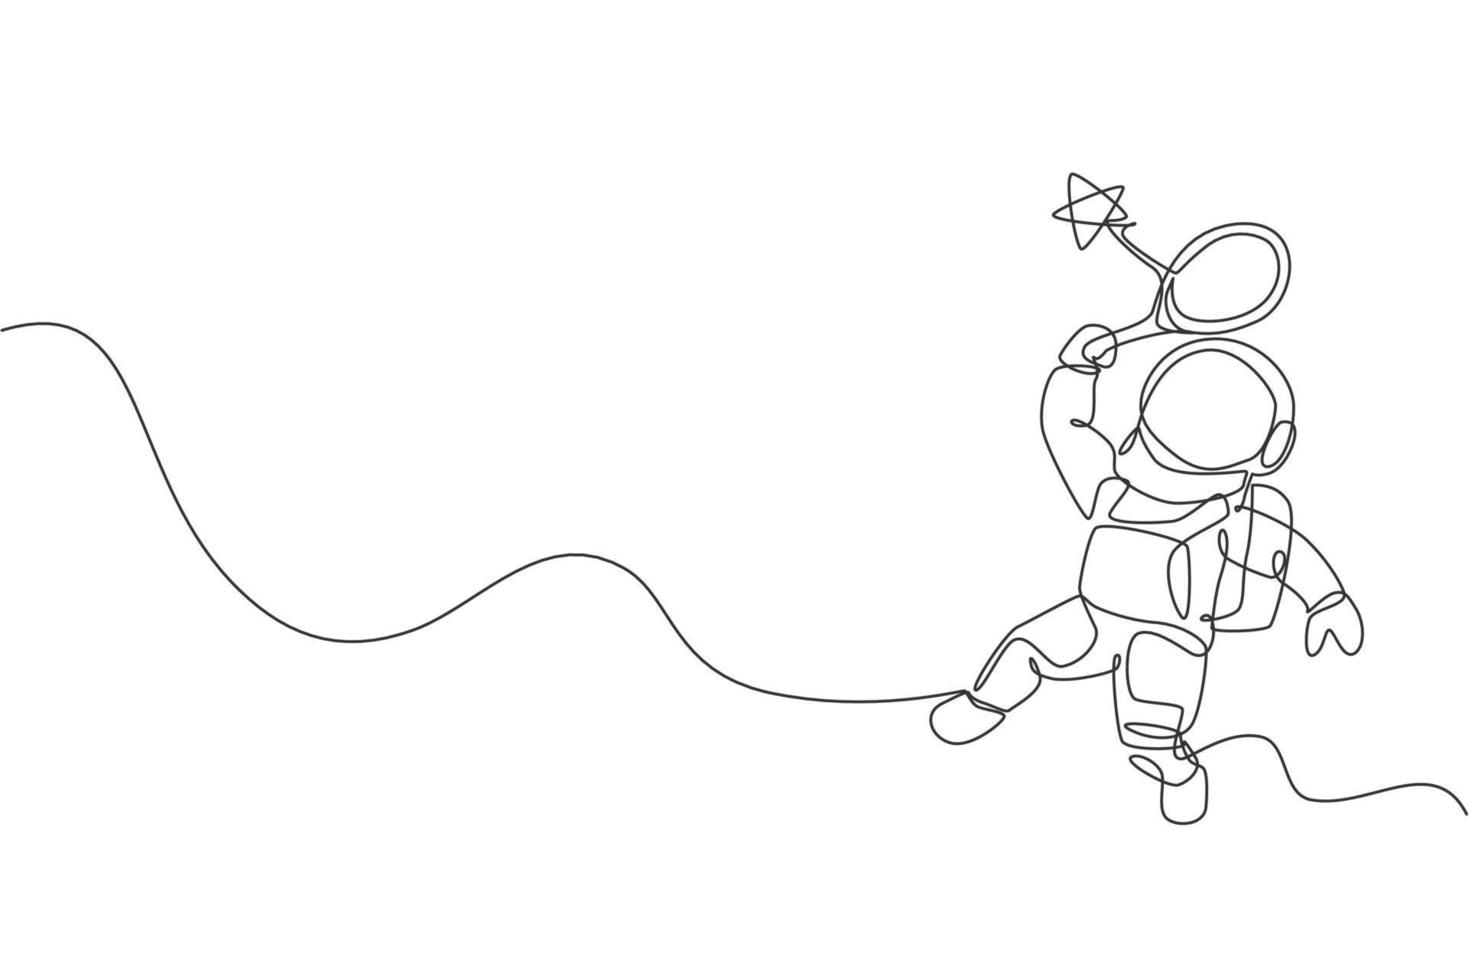 eine durchgehende Strichzeichnung eines Kosmonauten, der den Weltraum erforscht. Astronaut schlägt Stern mit Schläger. Fantasy-Konzept zur Entdeckung der kosmischen Galaxie. dynamische einzeilige Grafikdesign-Vektorillustration zeichnen vektor